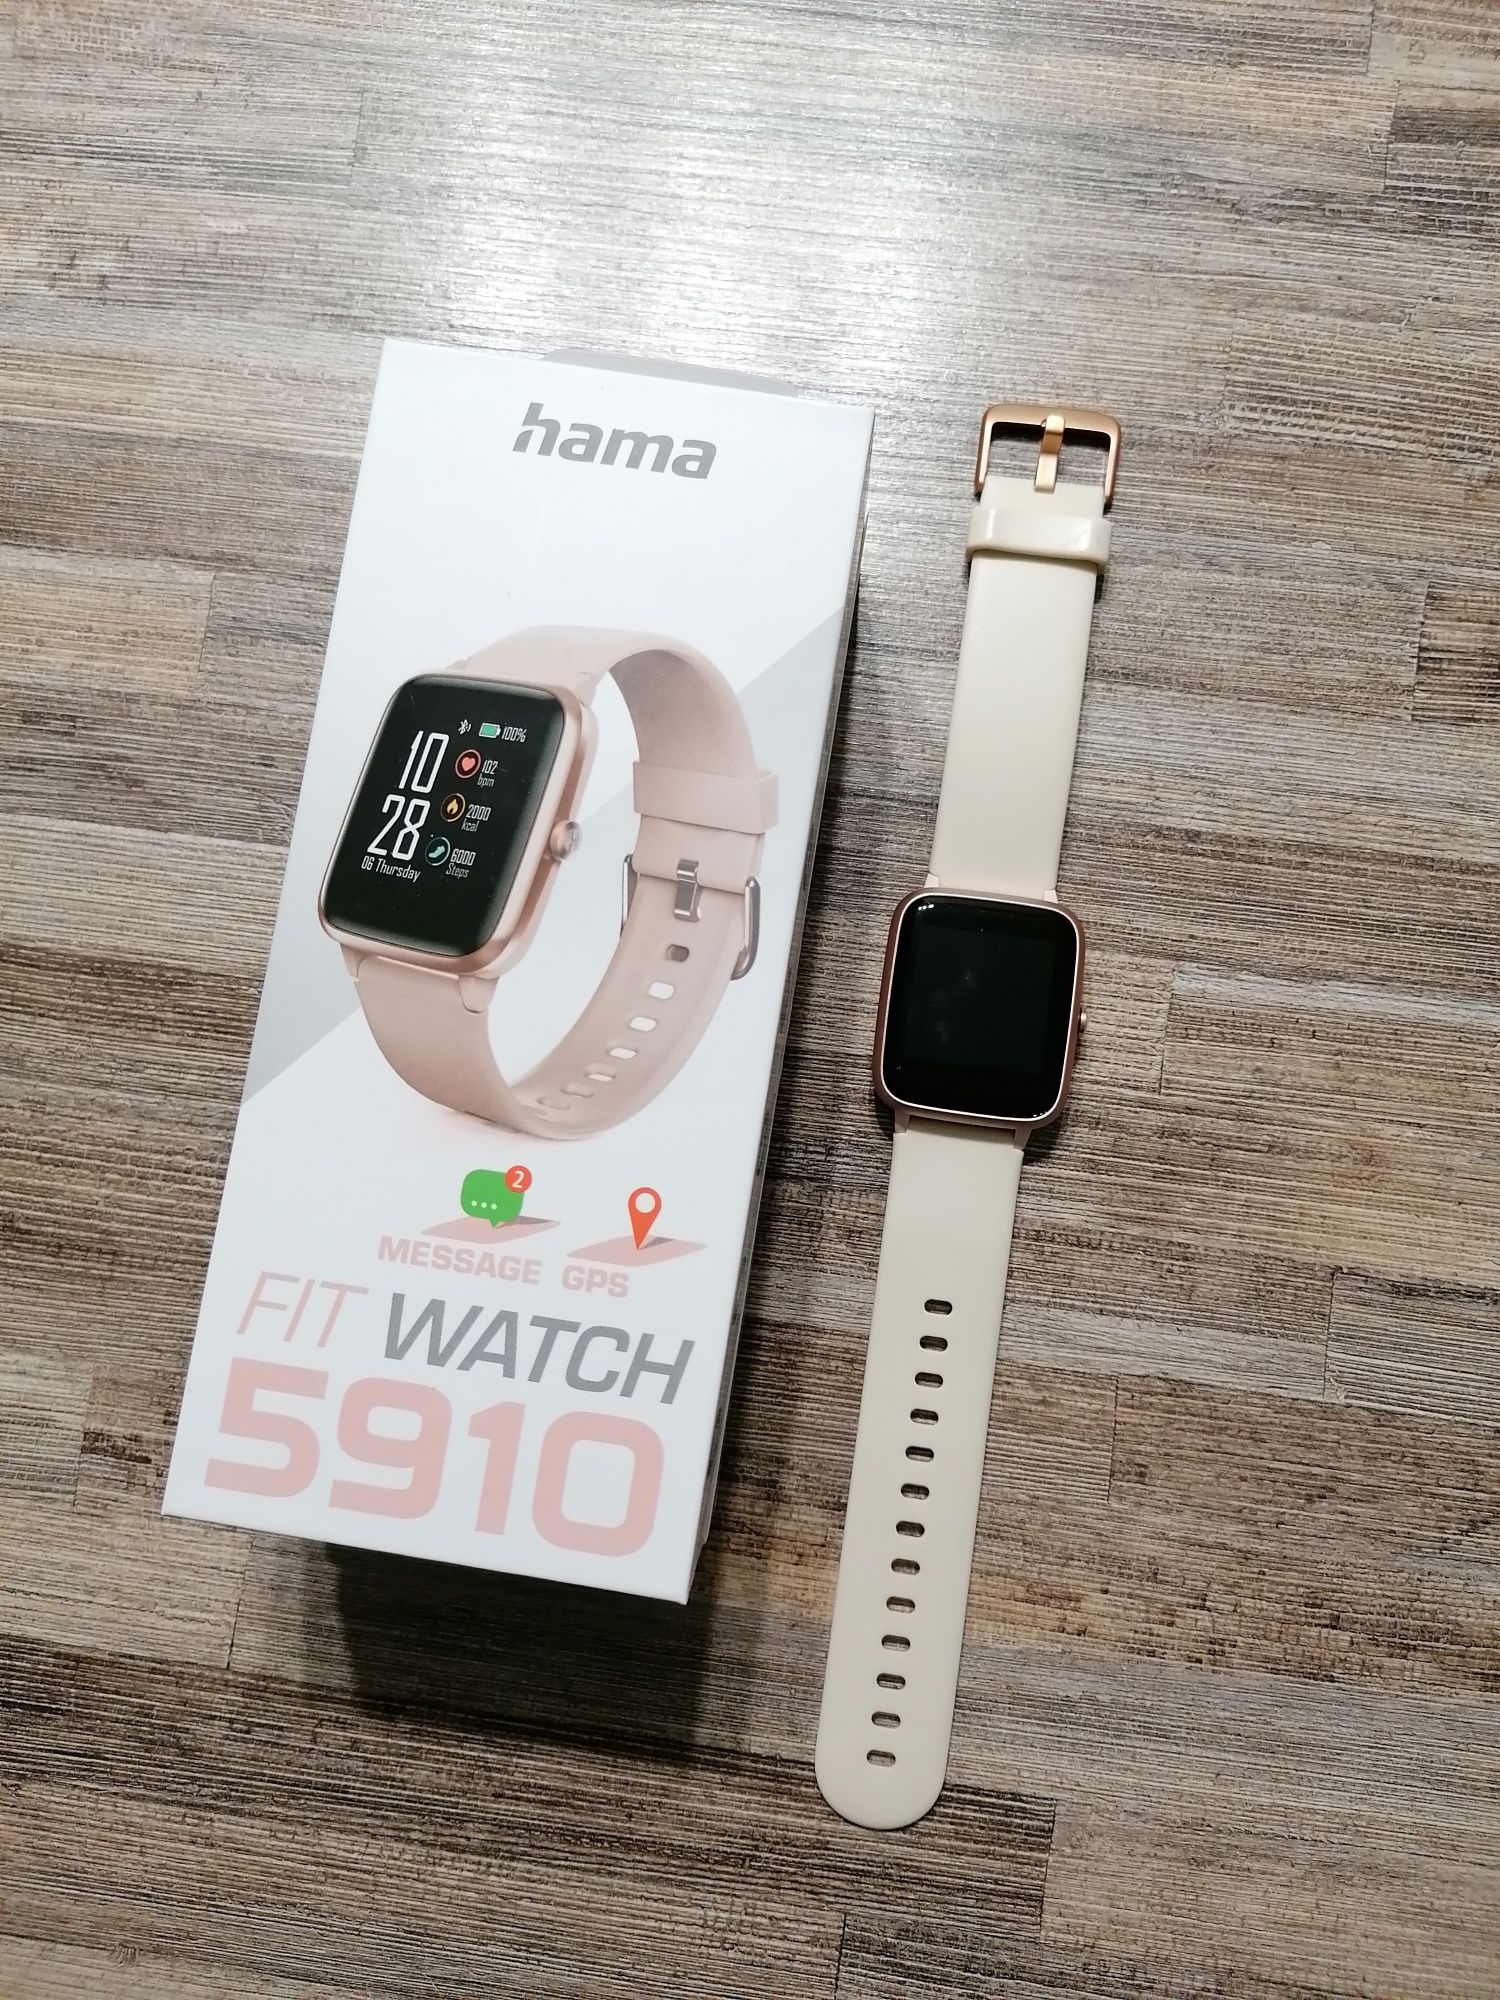 Hama Fit Watch 5910 в отлично състояние